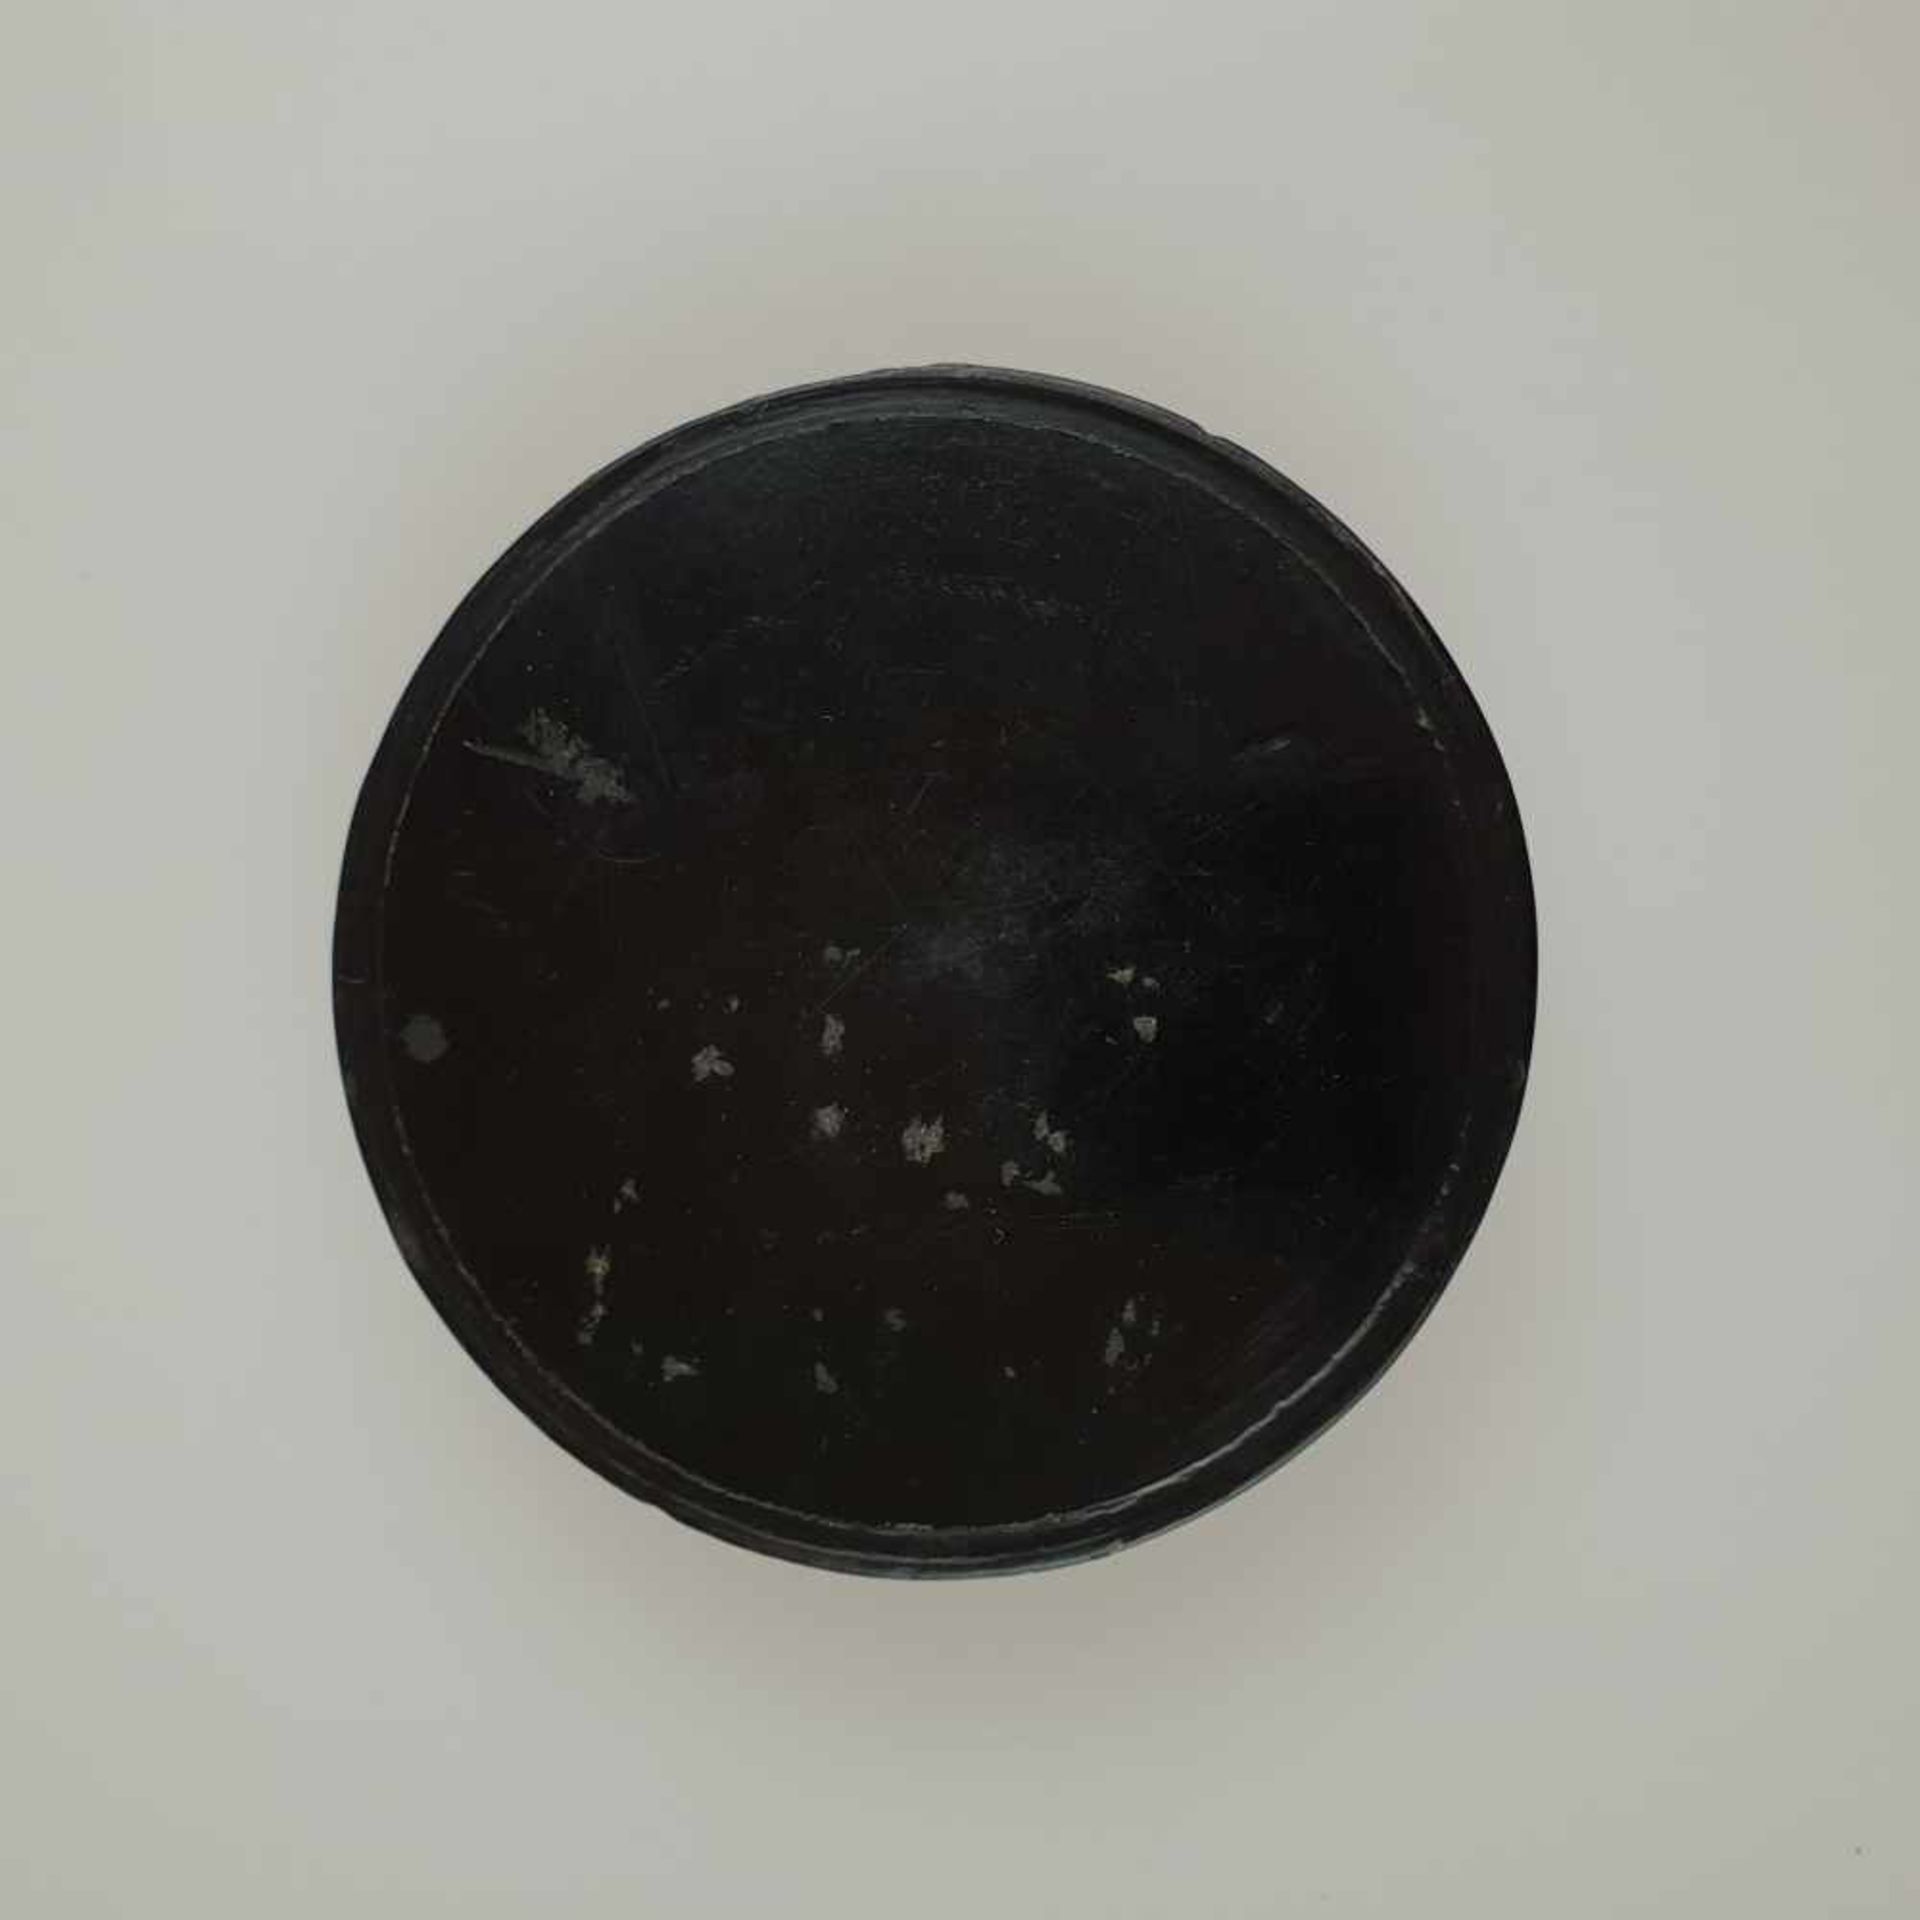 Schnupftabakdose - runde flache Dose, Papiermaché, schwarzer Lackgrund, polychrom bemalt mit " - Bild 5 aus 5